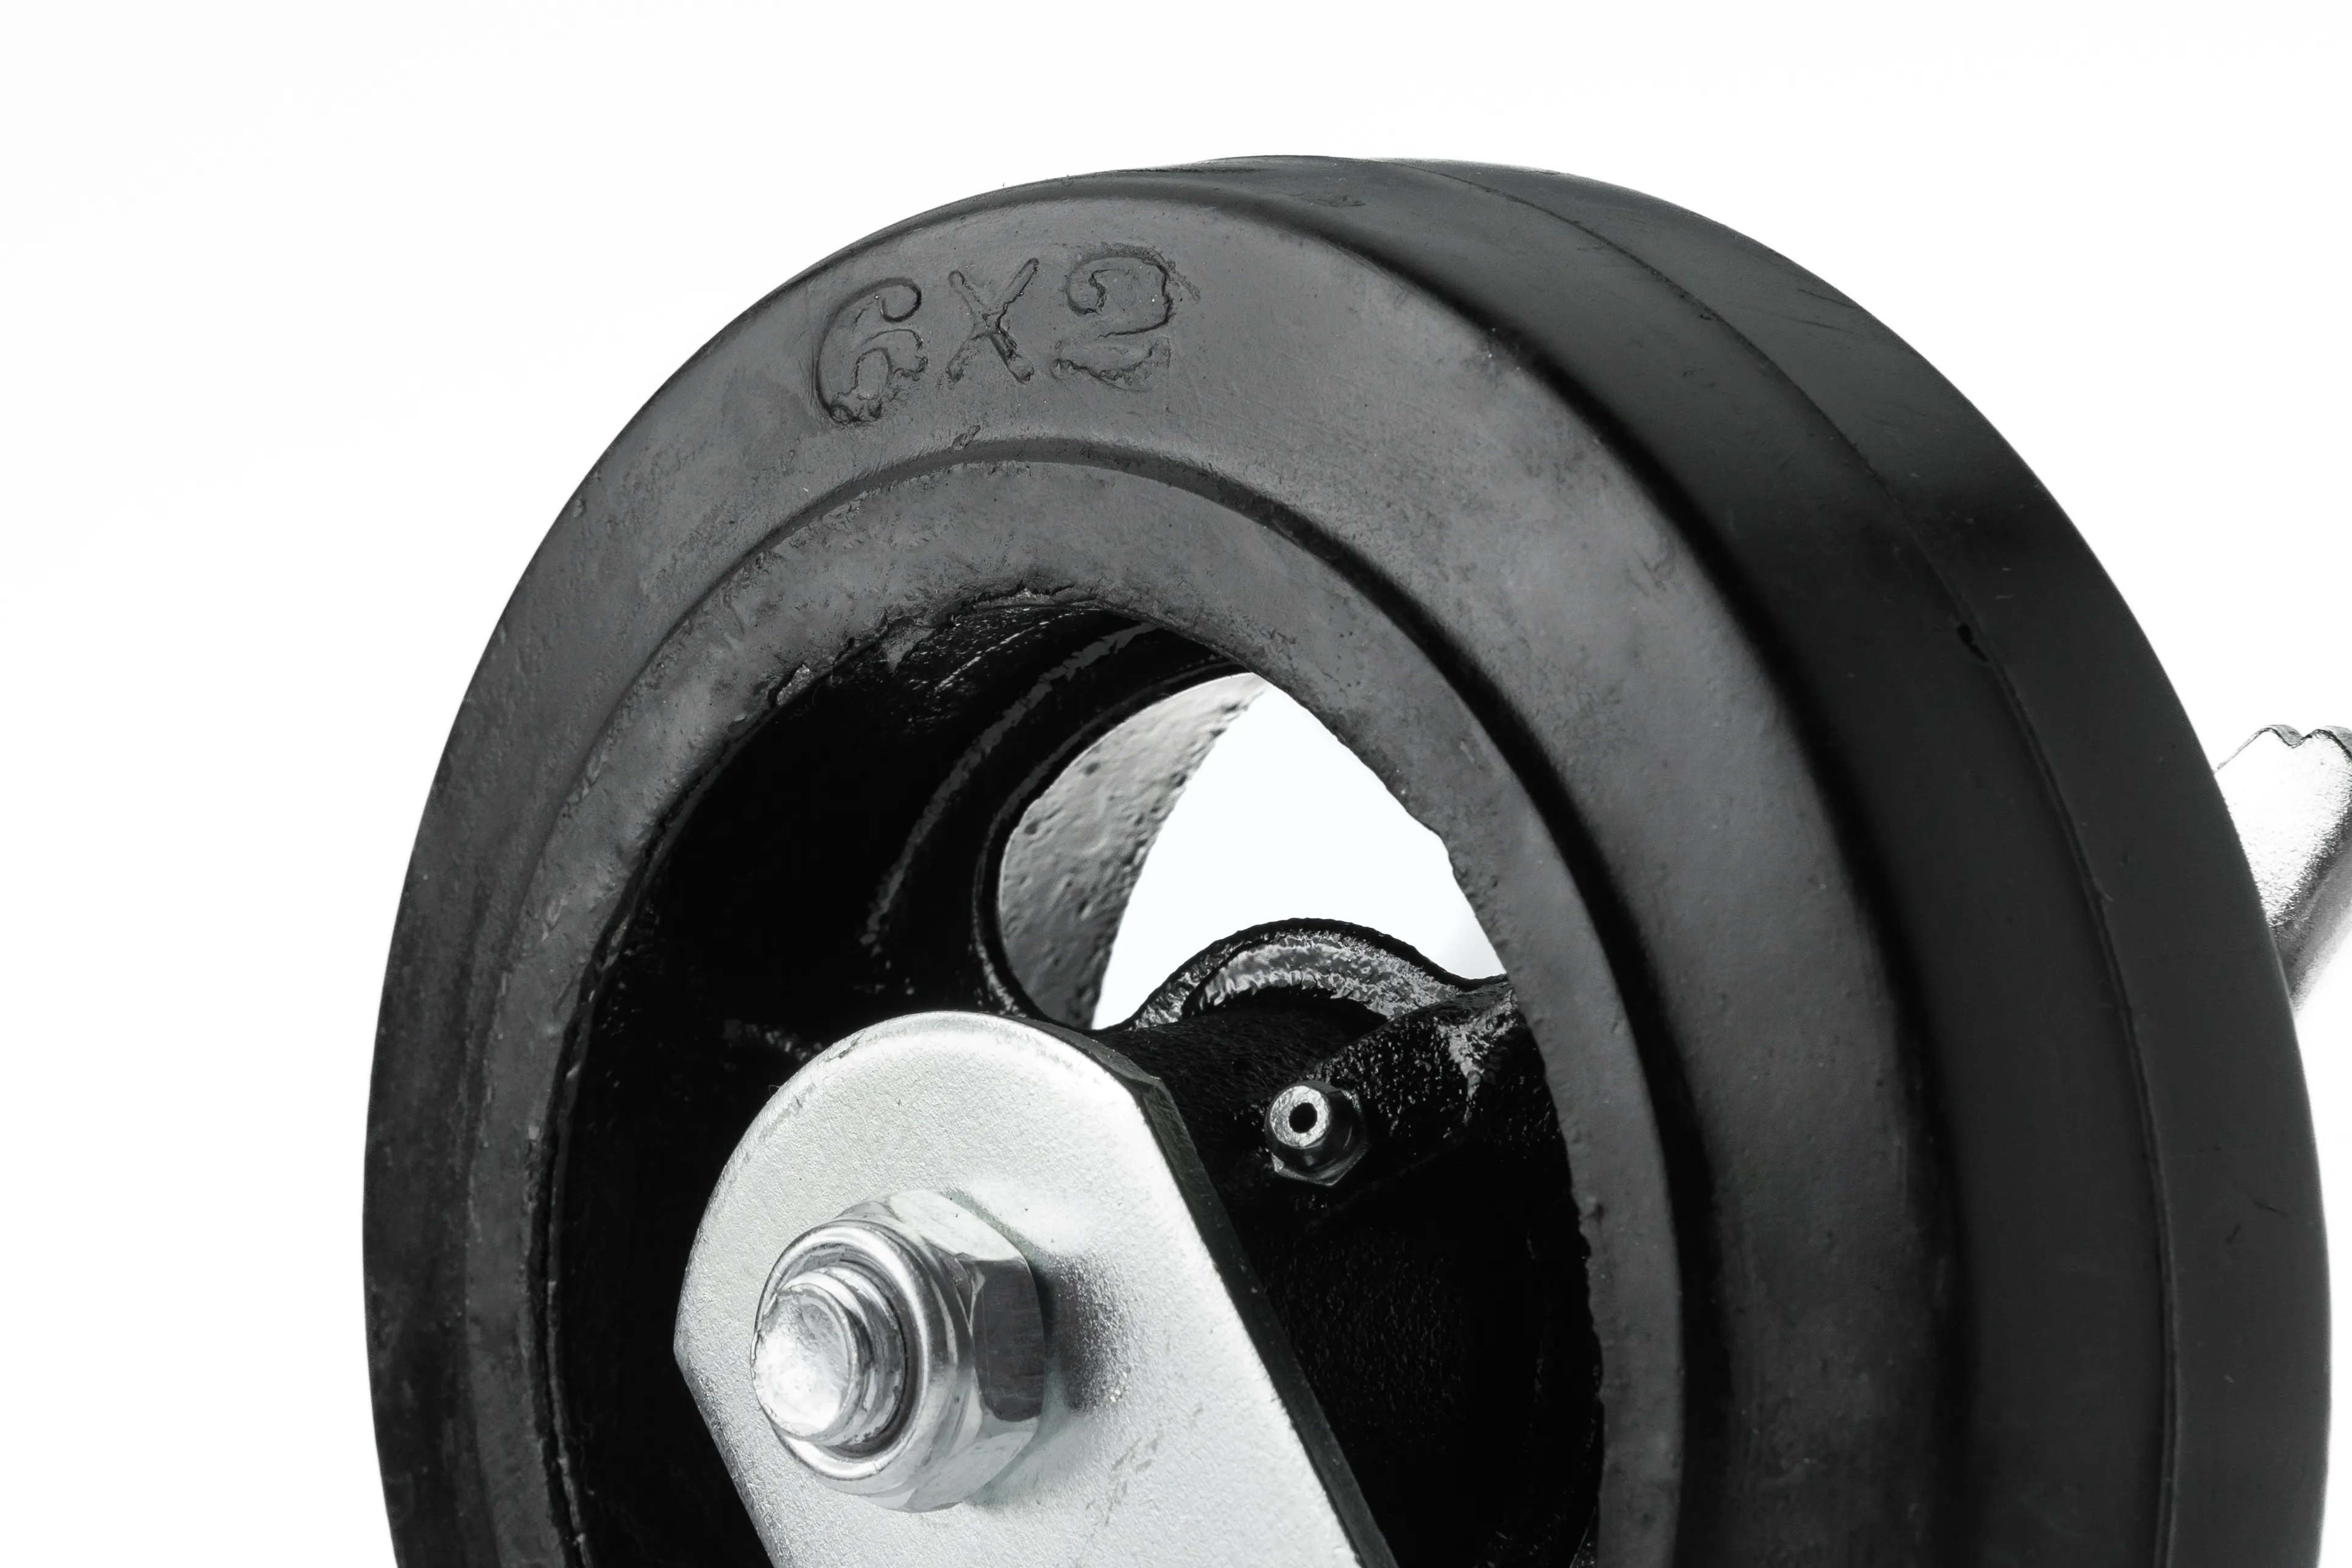 SCDB 63 - Большегрузное чугунное колесо 150 мм (поворот., тормоз, площадка, черн. рез, роликоподш.)